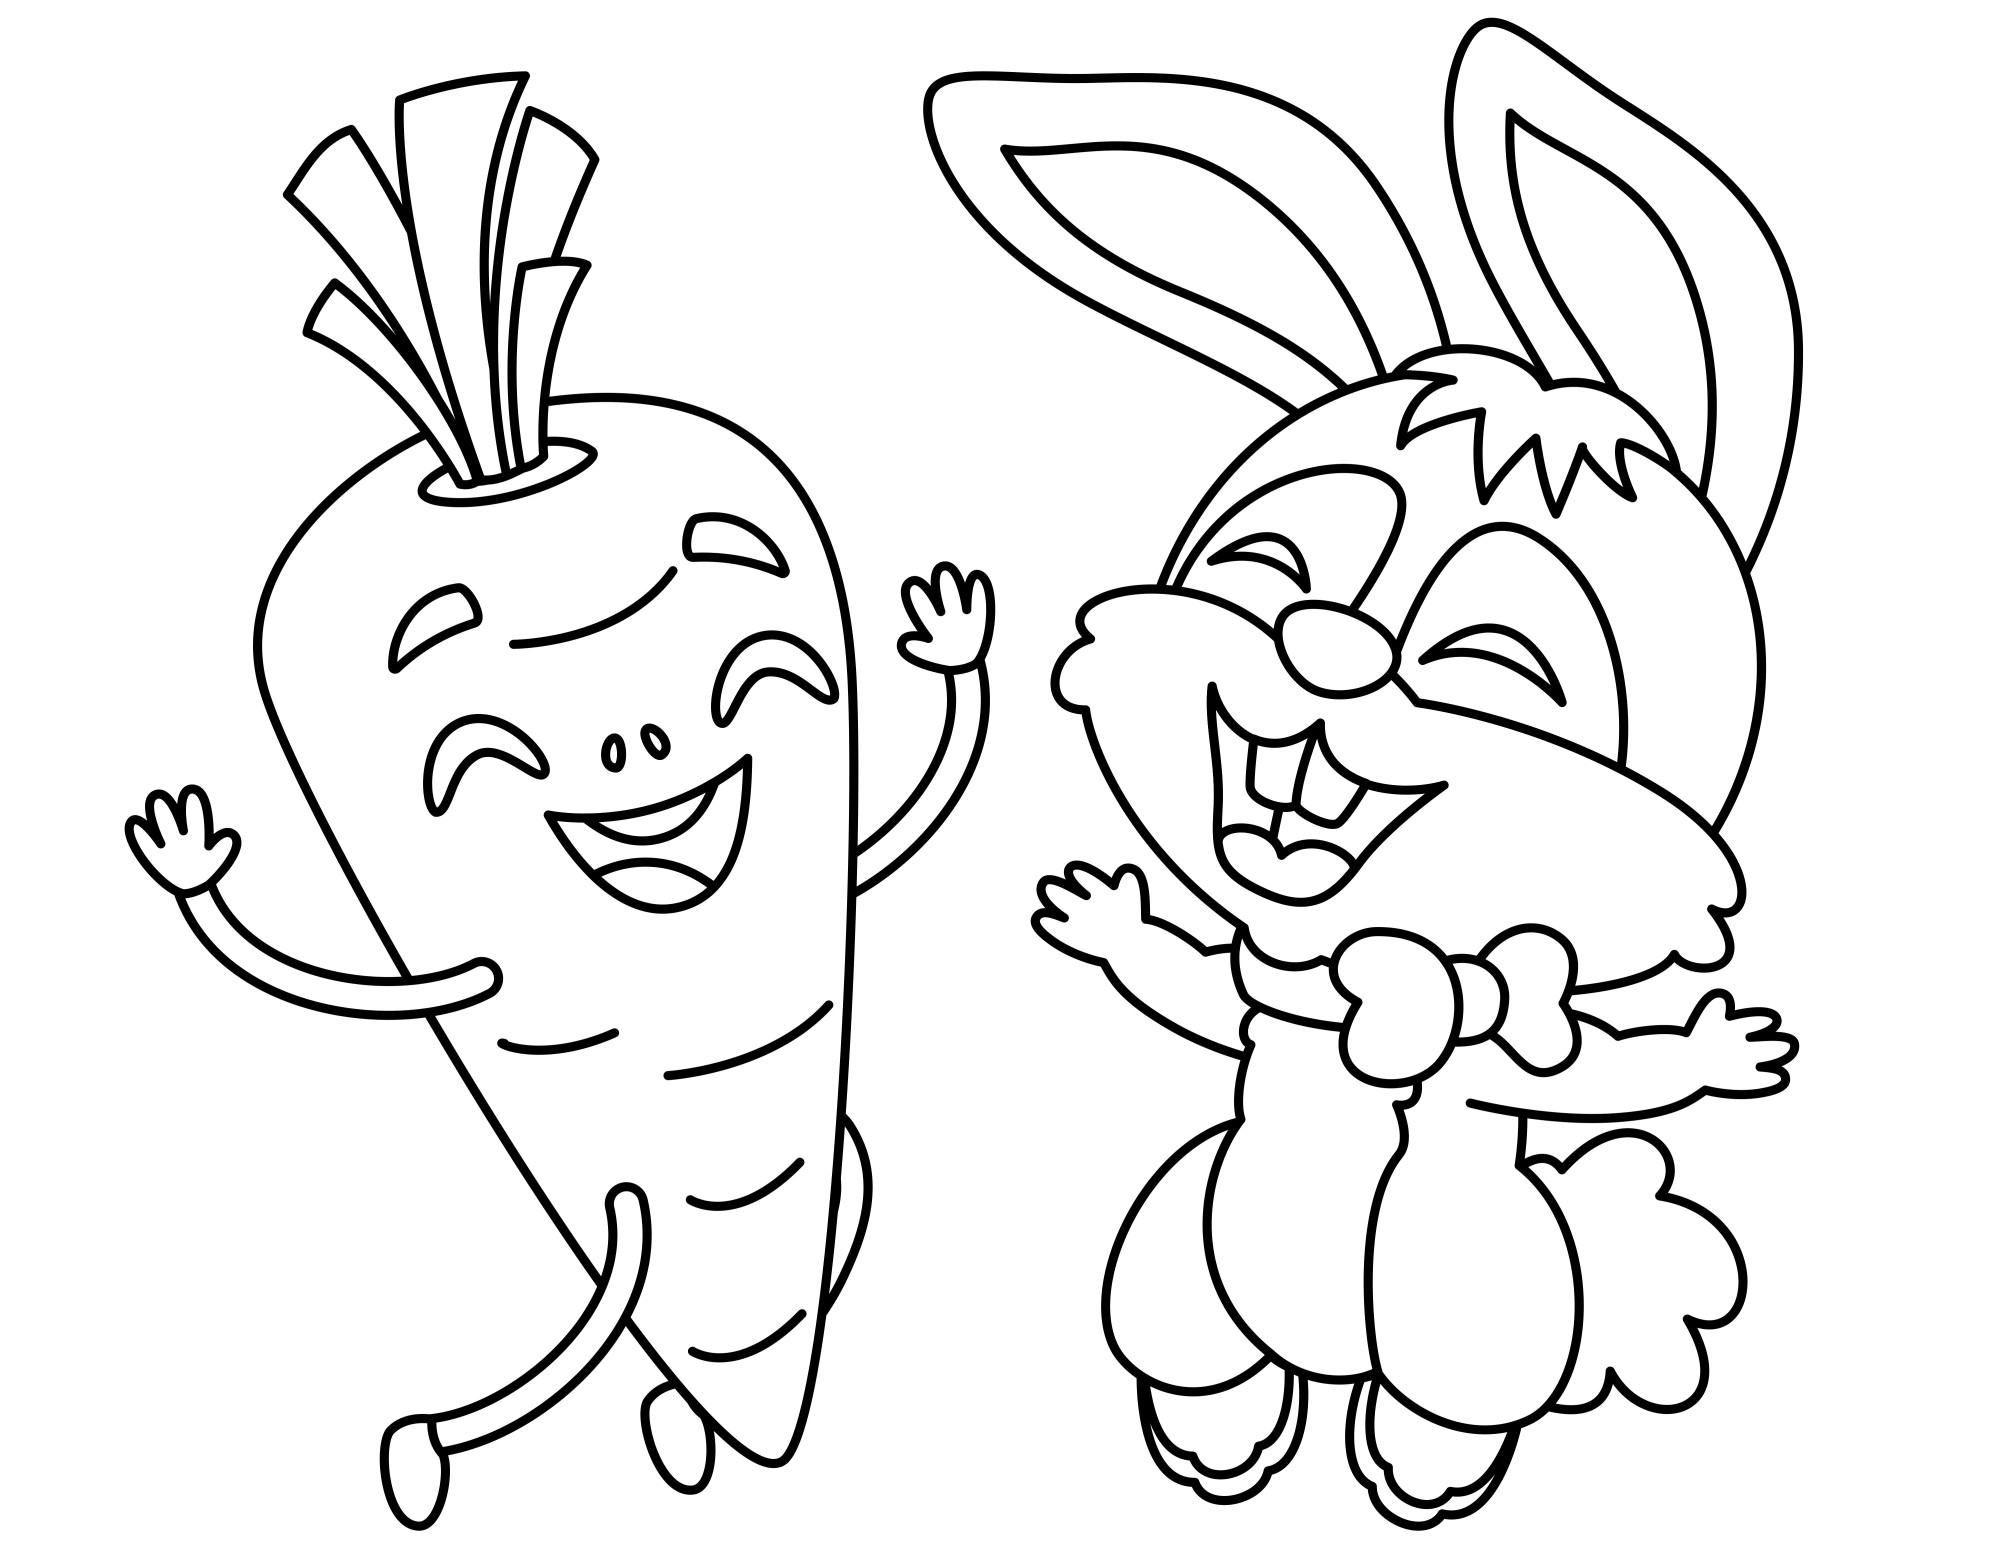 Раскраска для детей: морковка танцует с кроликом